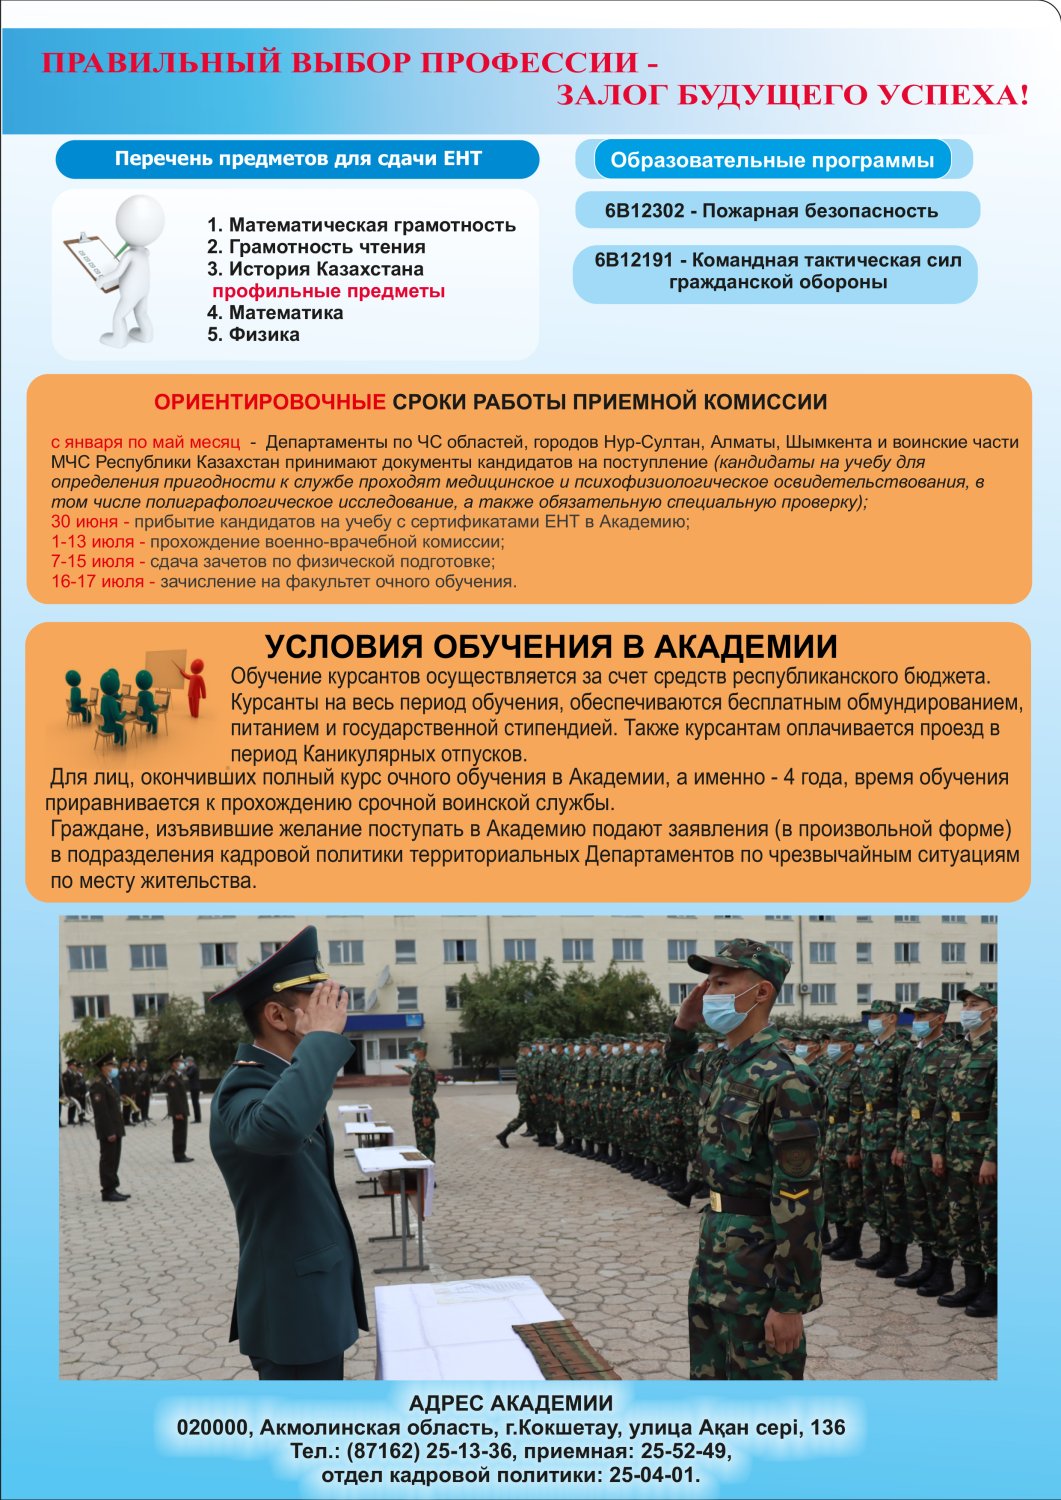 Академия гражданской защиты имени Малика Габдуллина МЧС Республики Казахстан